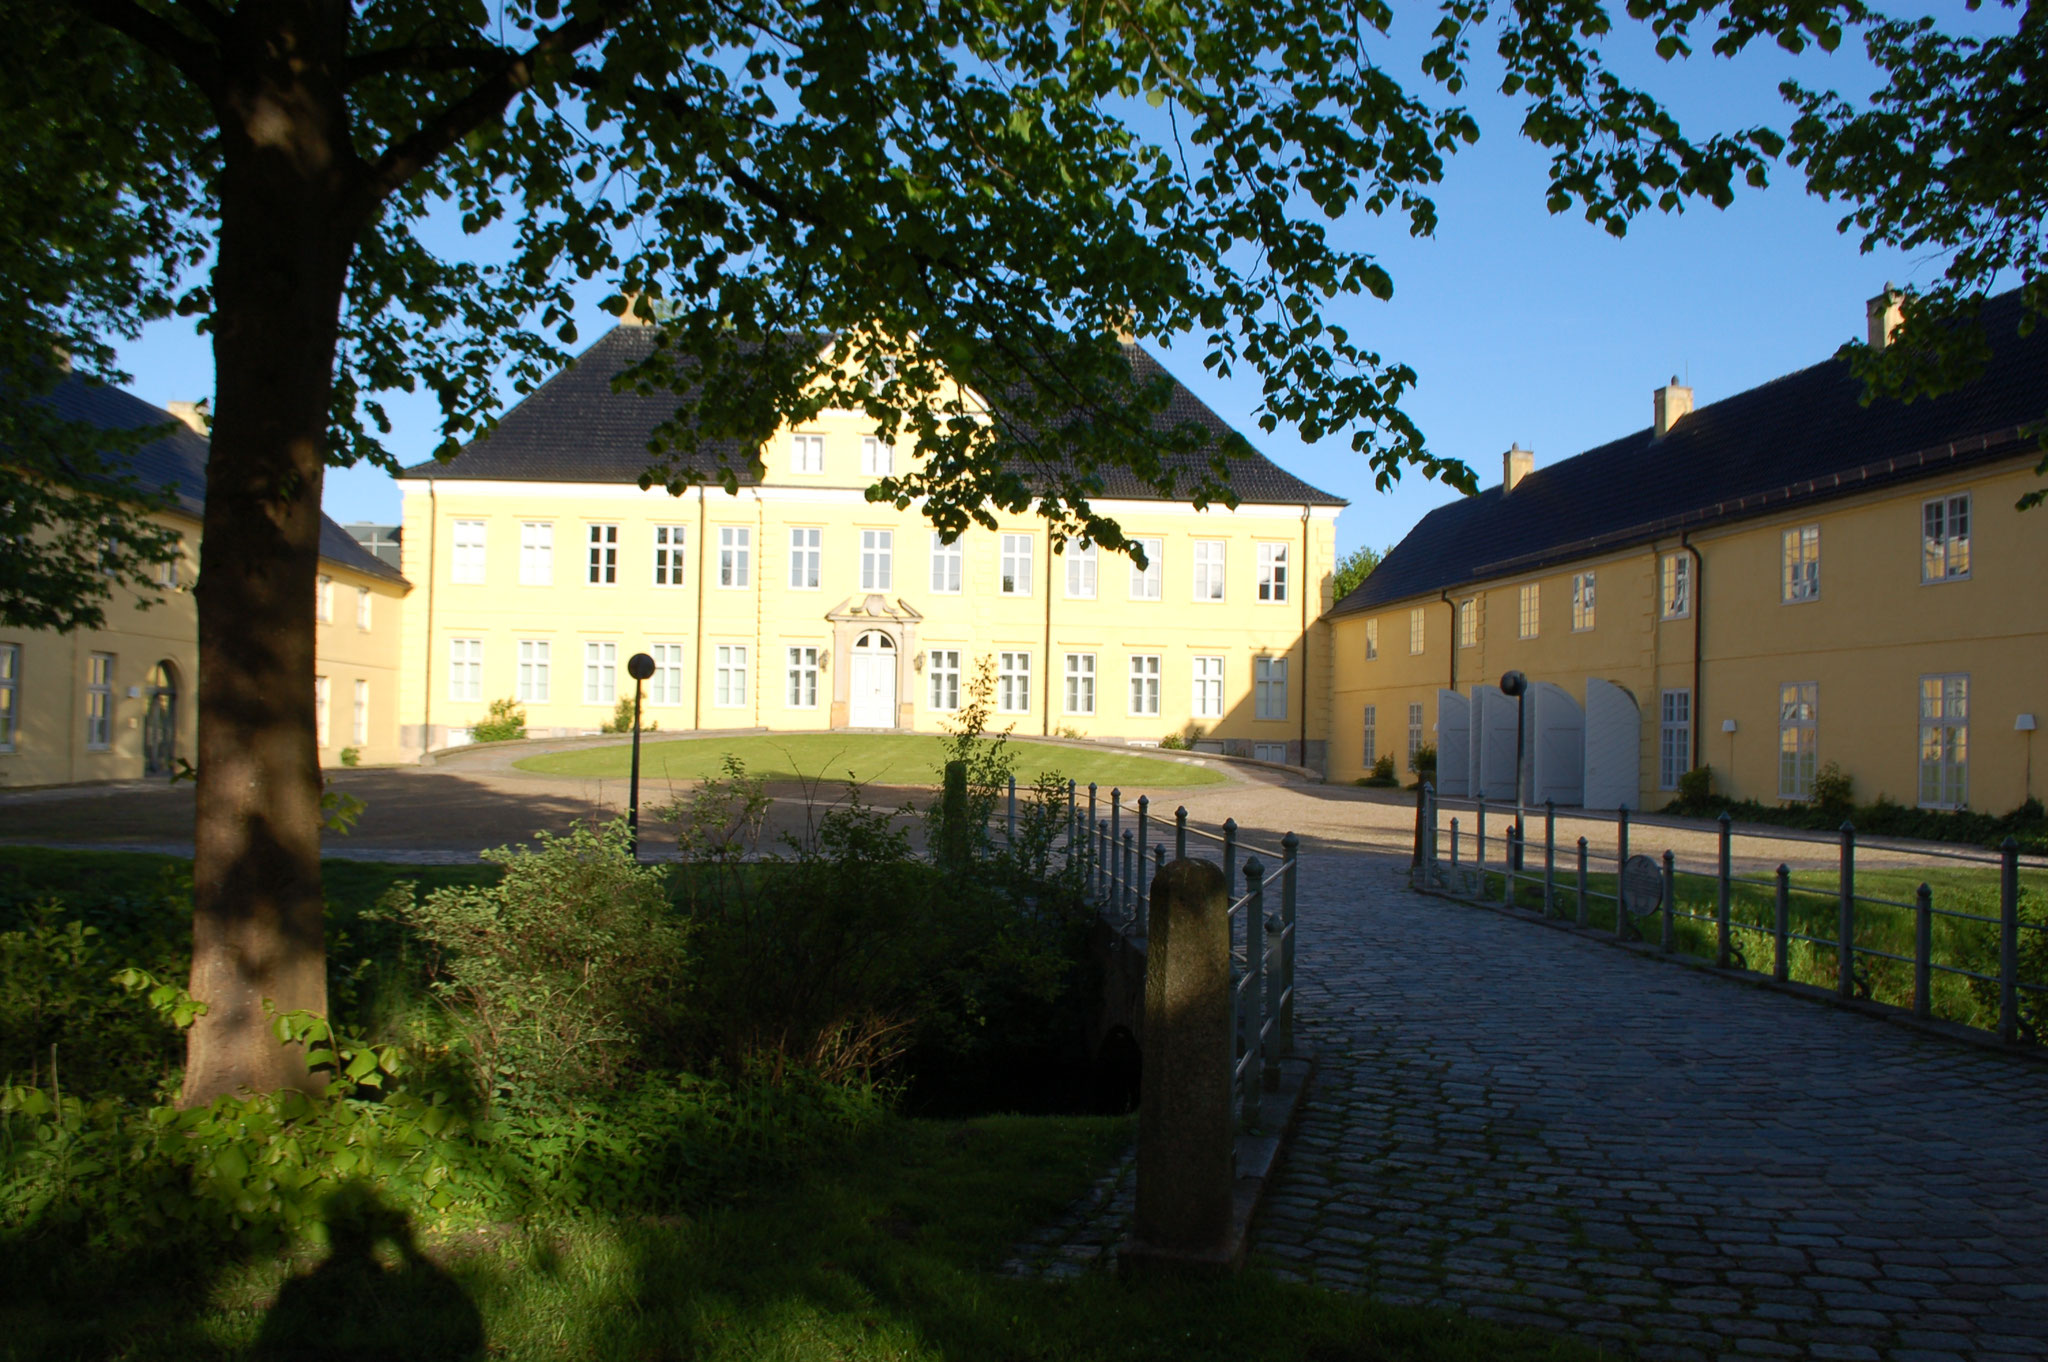 Das Prinzenpalais in Schleswig